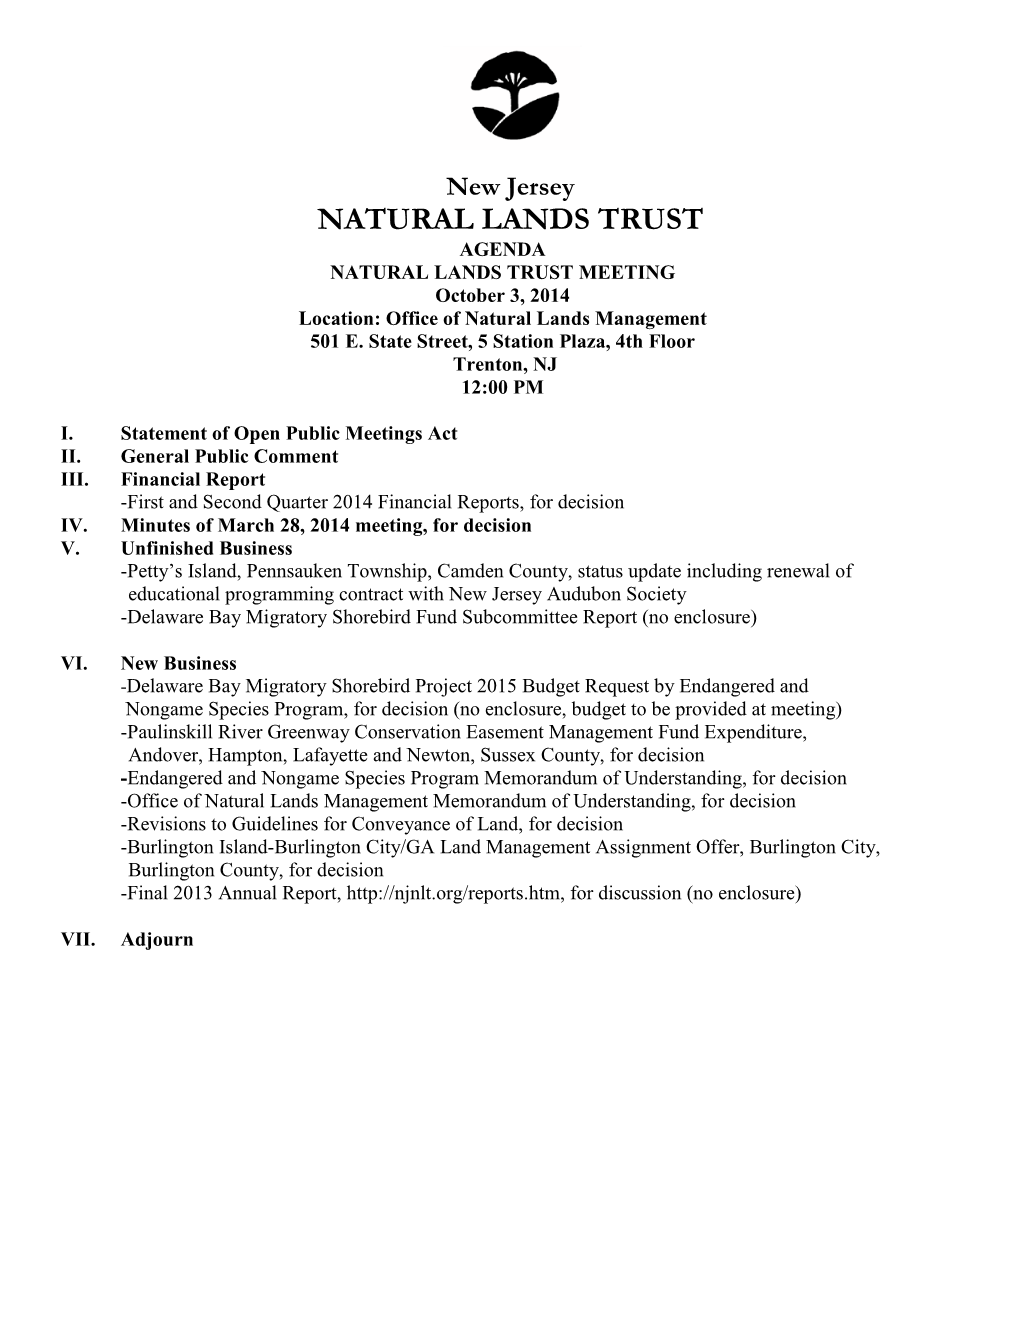 NATURAL LANDS TRUST AGENDA NATURAL LANDS TRUST MEETING October 3, 2014 Location: Office of Natural Lands Management 501 E